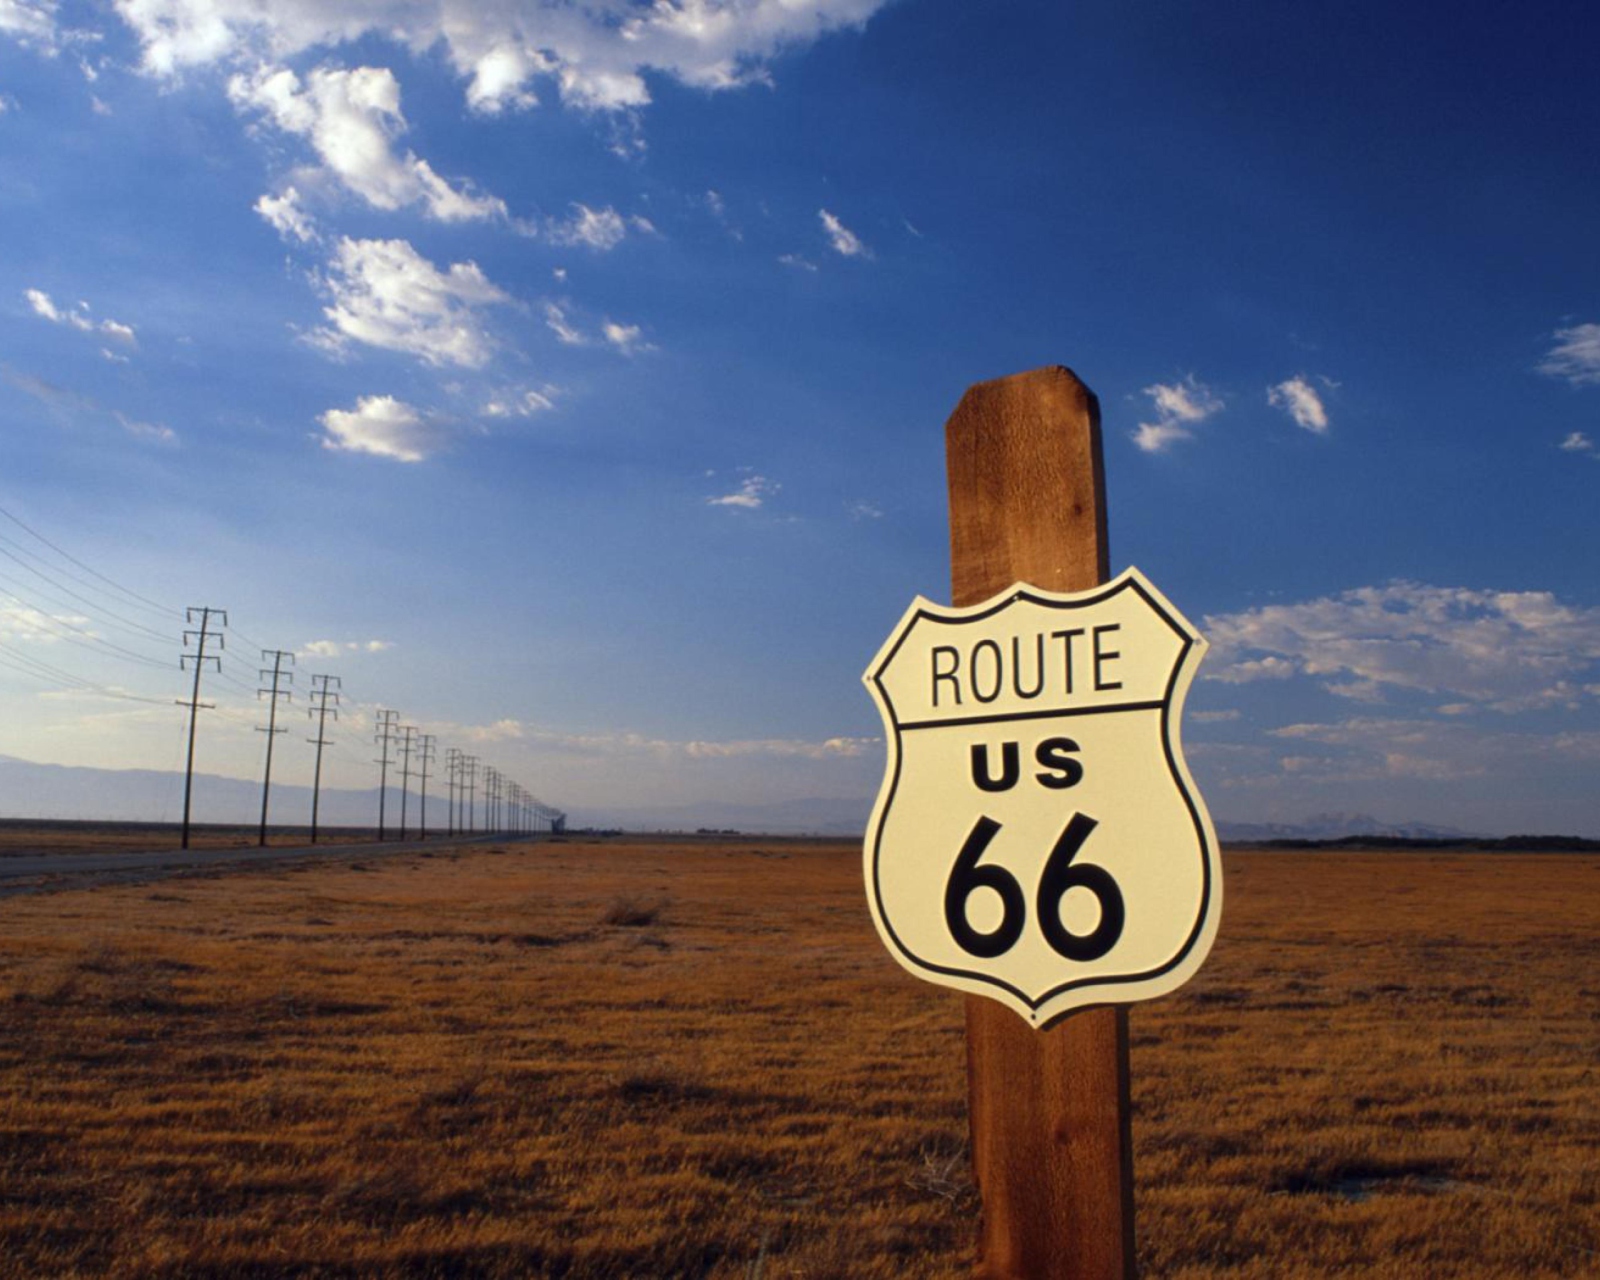 Sfondi America's Most Famous Route 66 1600x1280